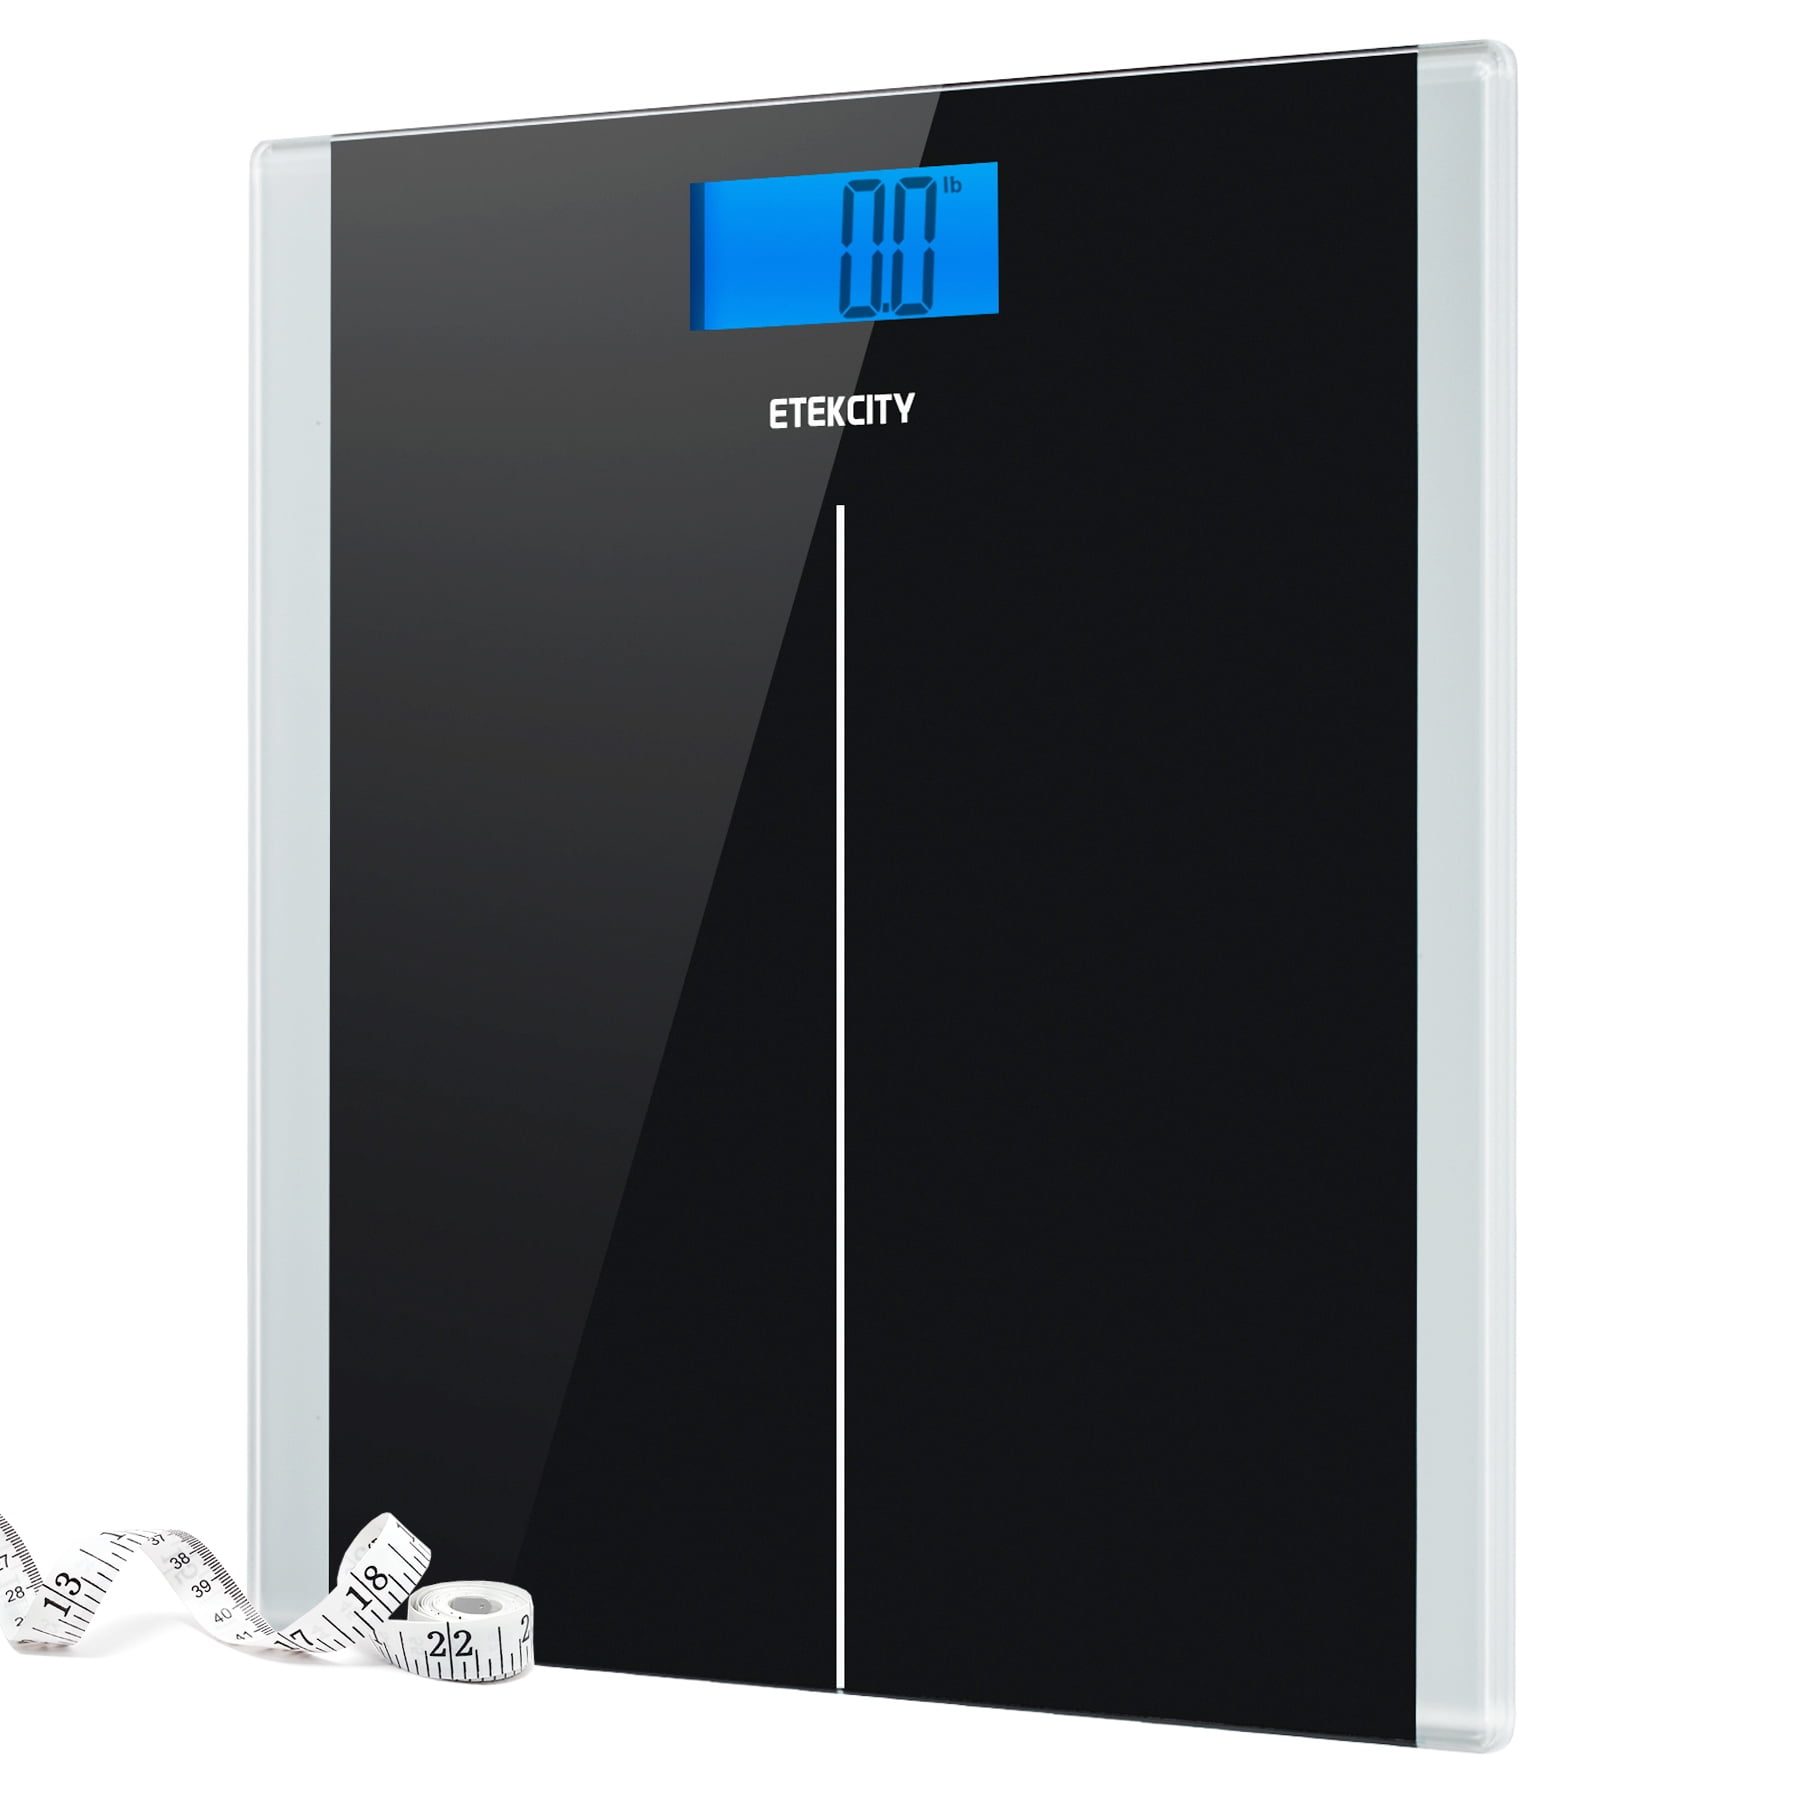 Digital Electronic Bathroom Black Bath Scale Weight Baby 